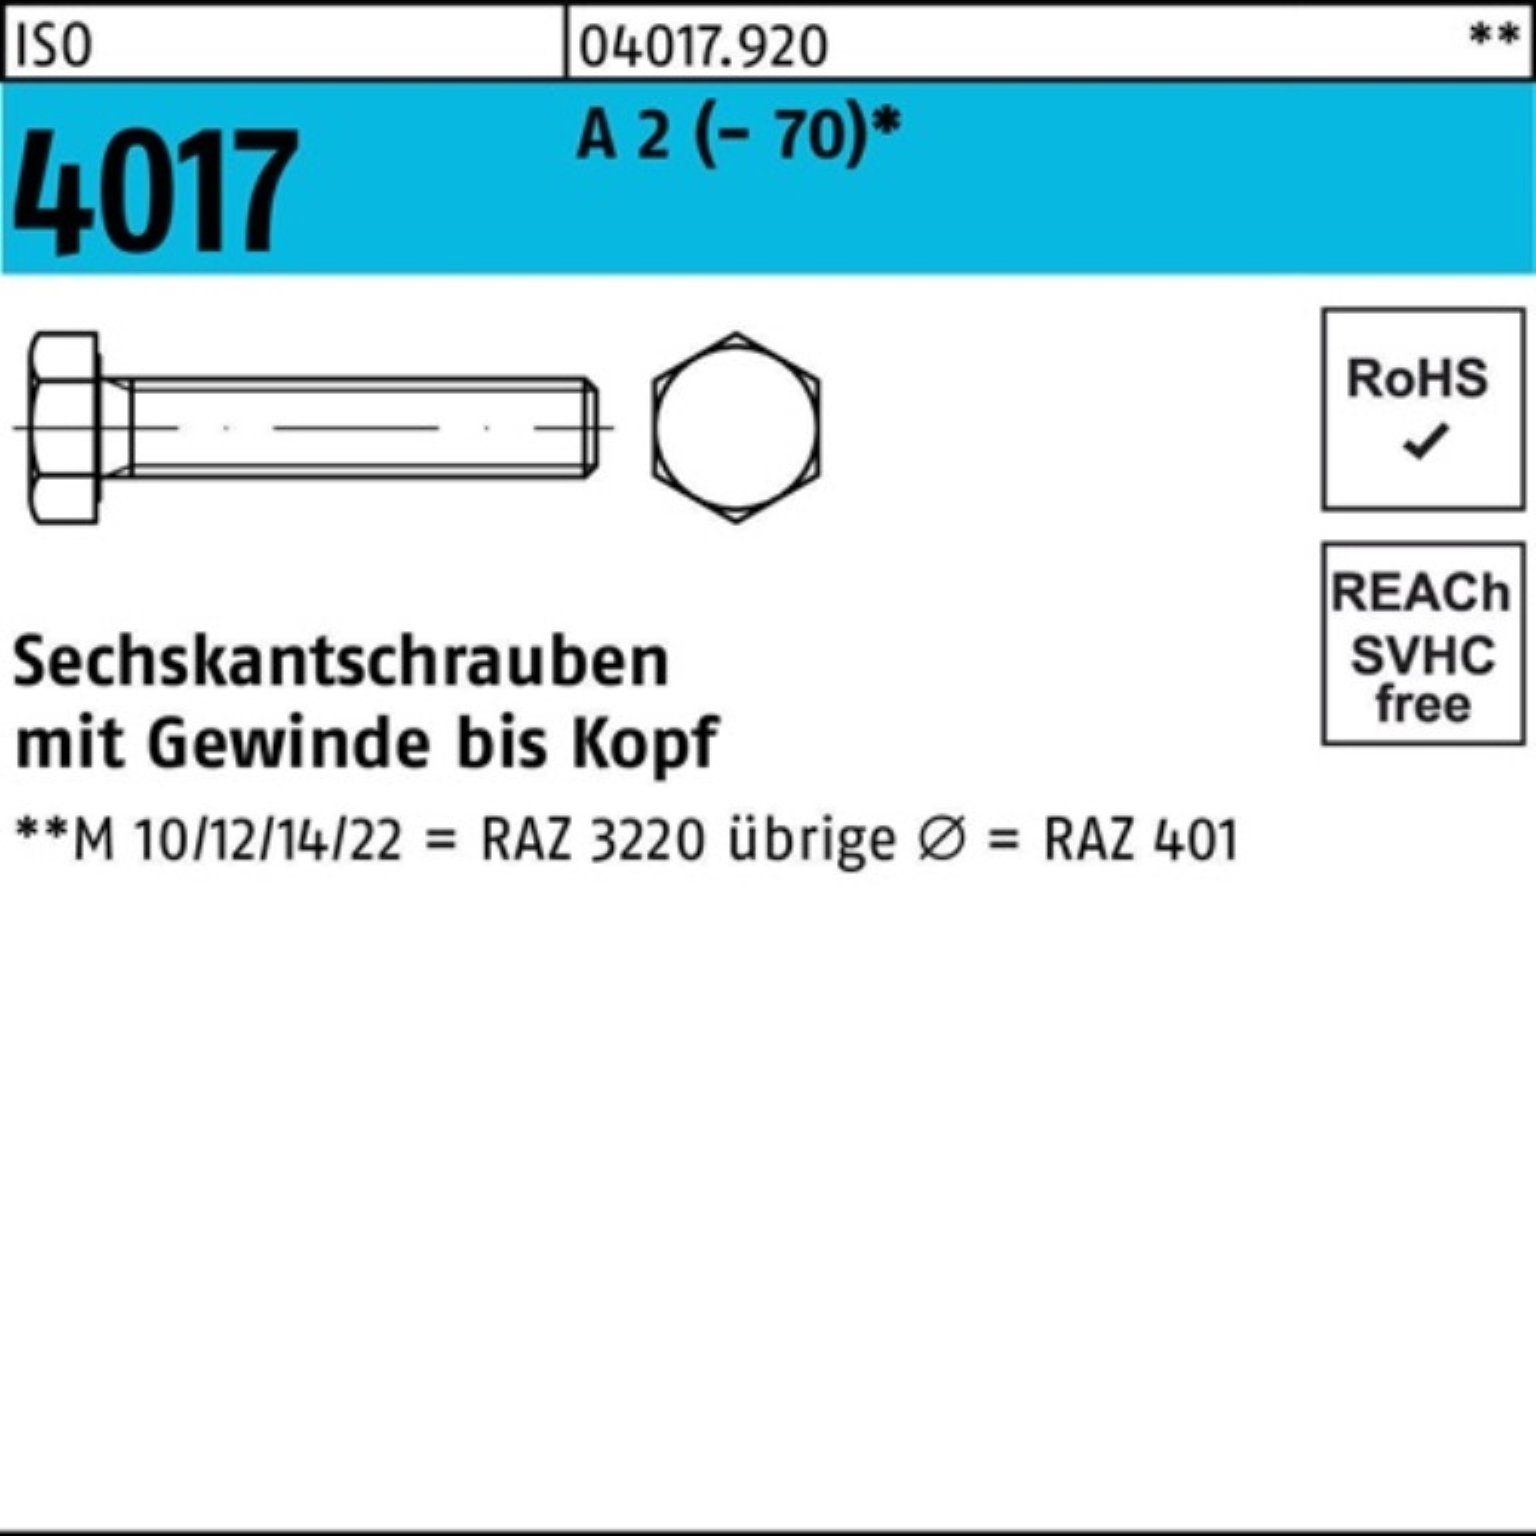 Bufab Sechskantschraube (70) Sechskantschraube 70 VG 25 M16x 4017 2 A ISO Pack 100er Stück